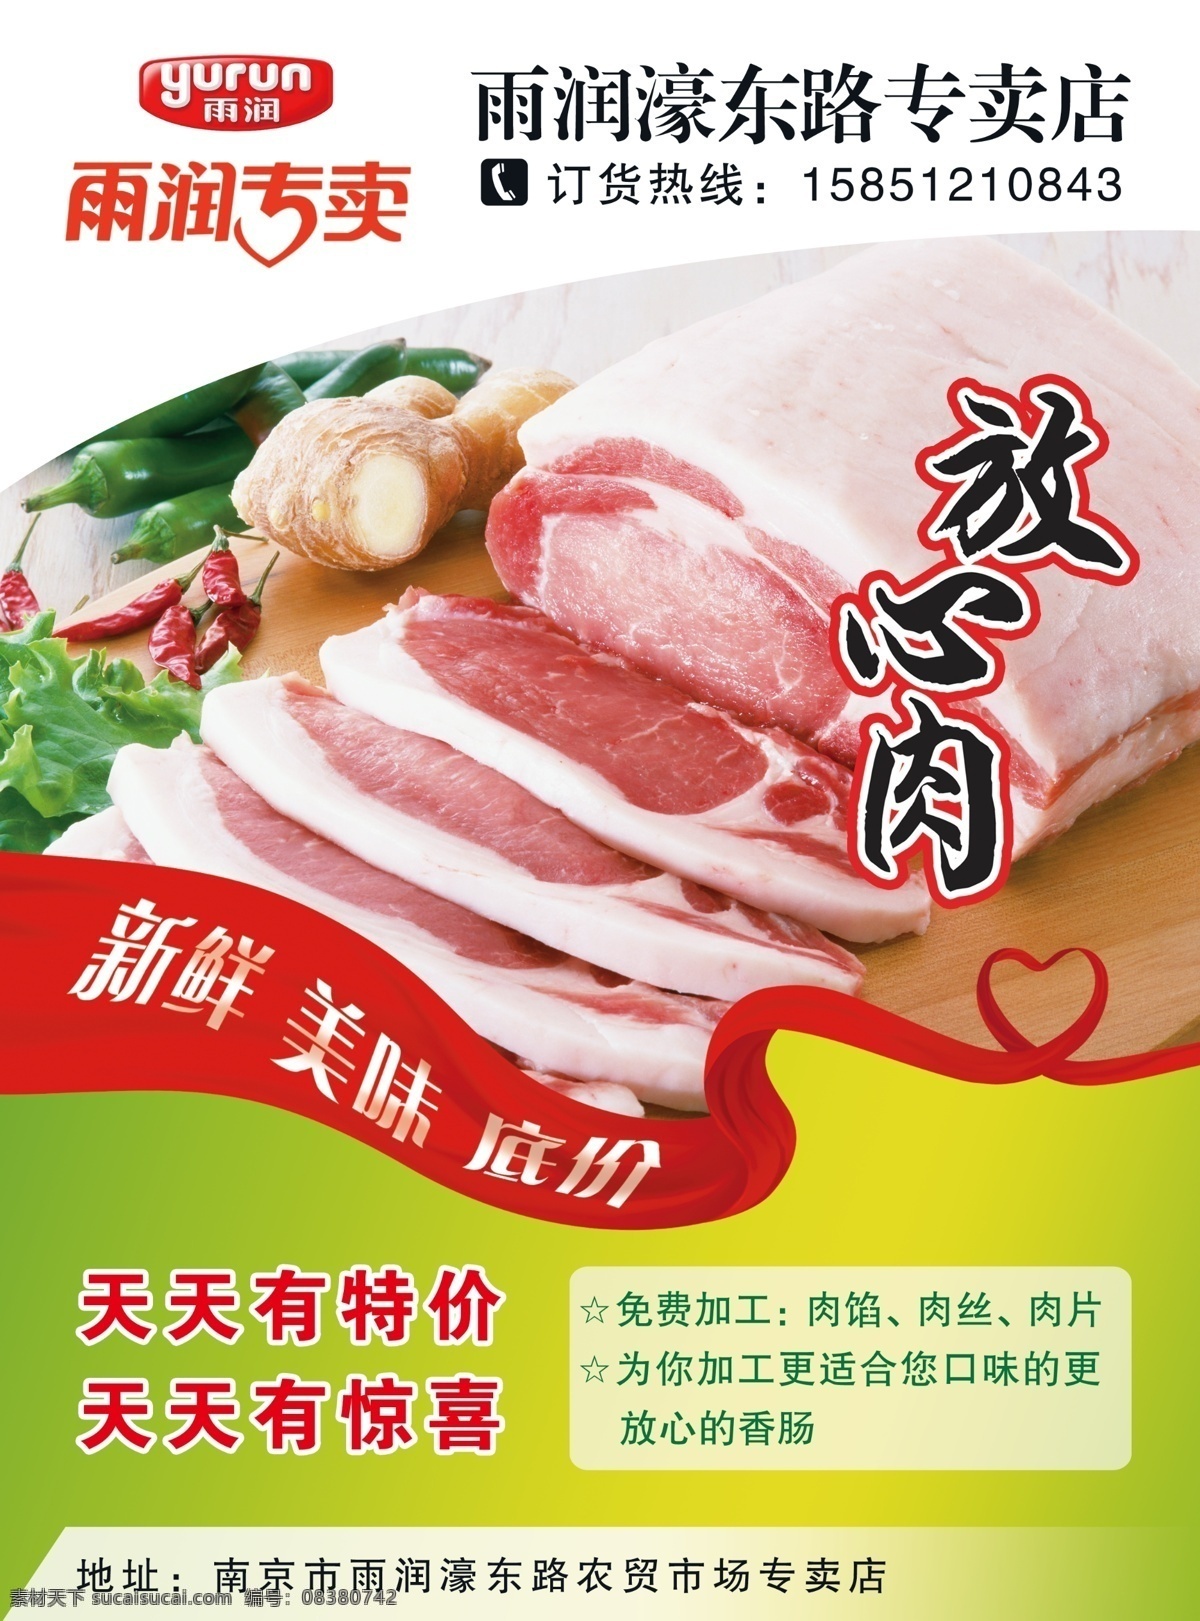 雨润肉专卖 雨润 肉 食品 放心肉 猪肉 宣传单